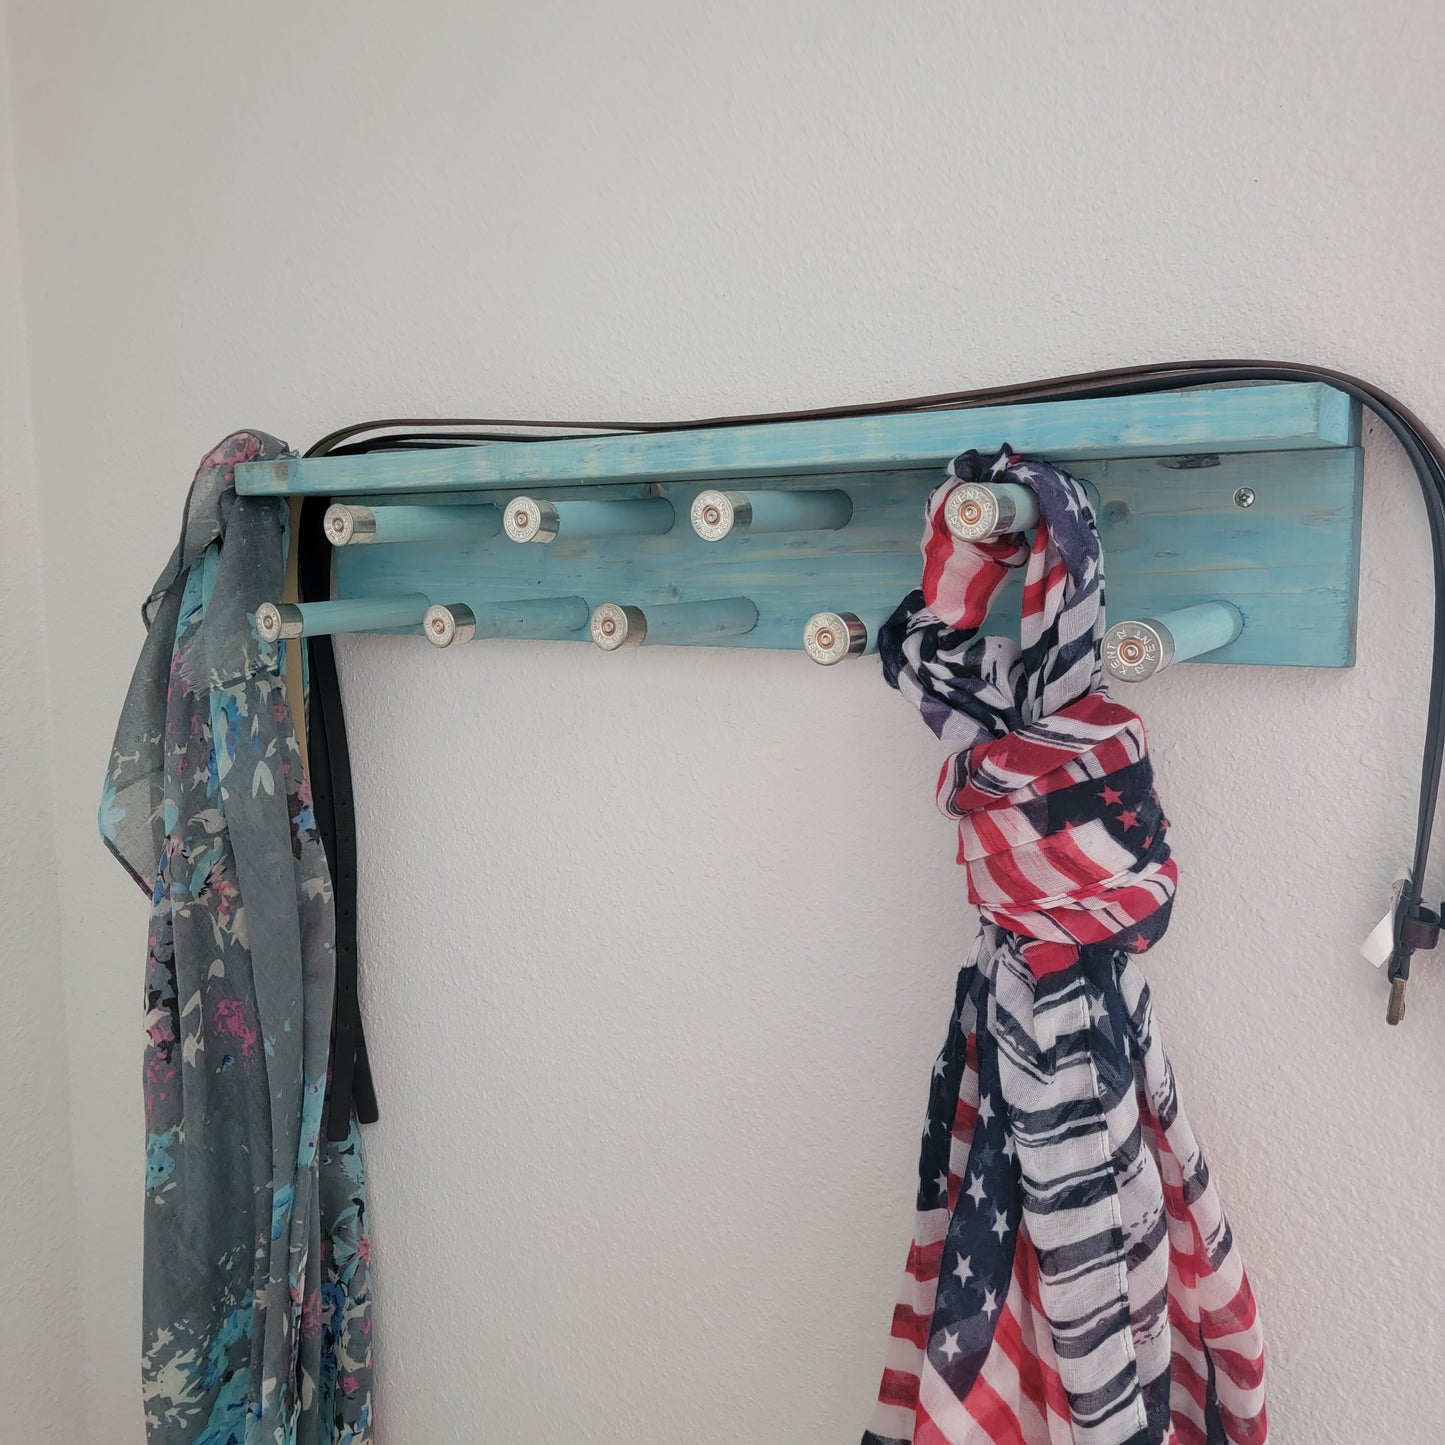 SRWS - Scarf Rack with Shelf